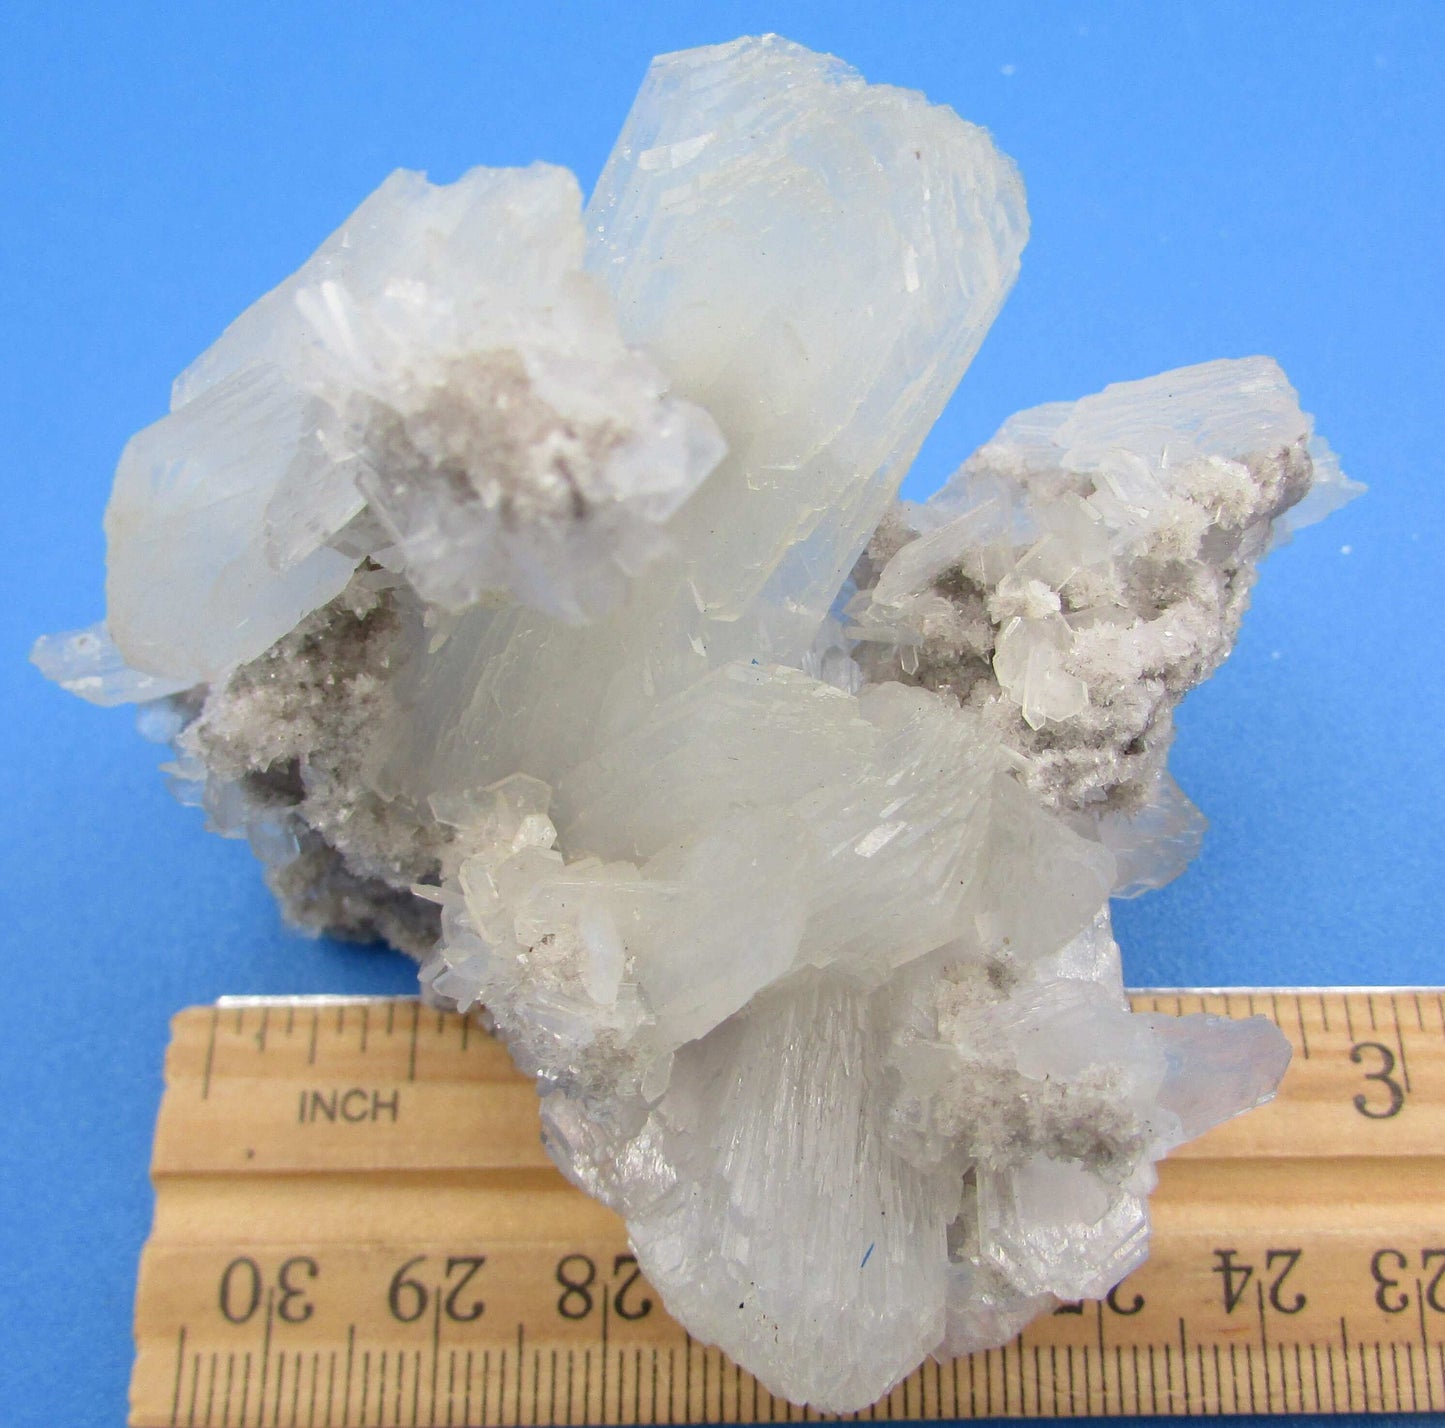 Stilbite Flower Crystal Cluster (FTM445)